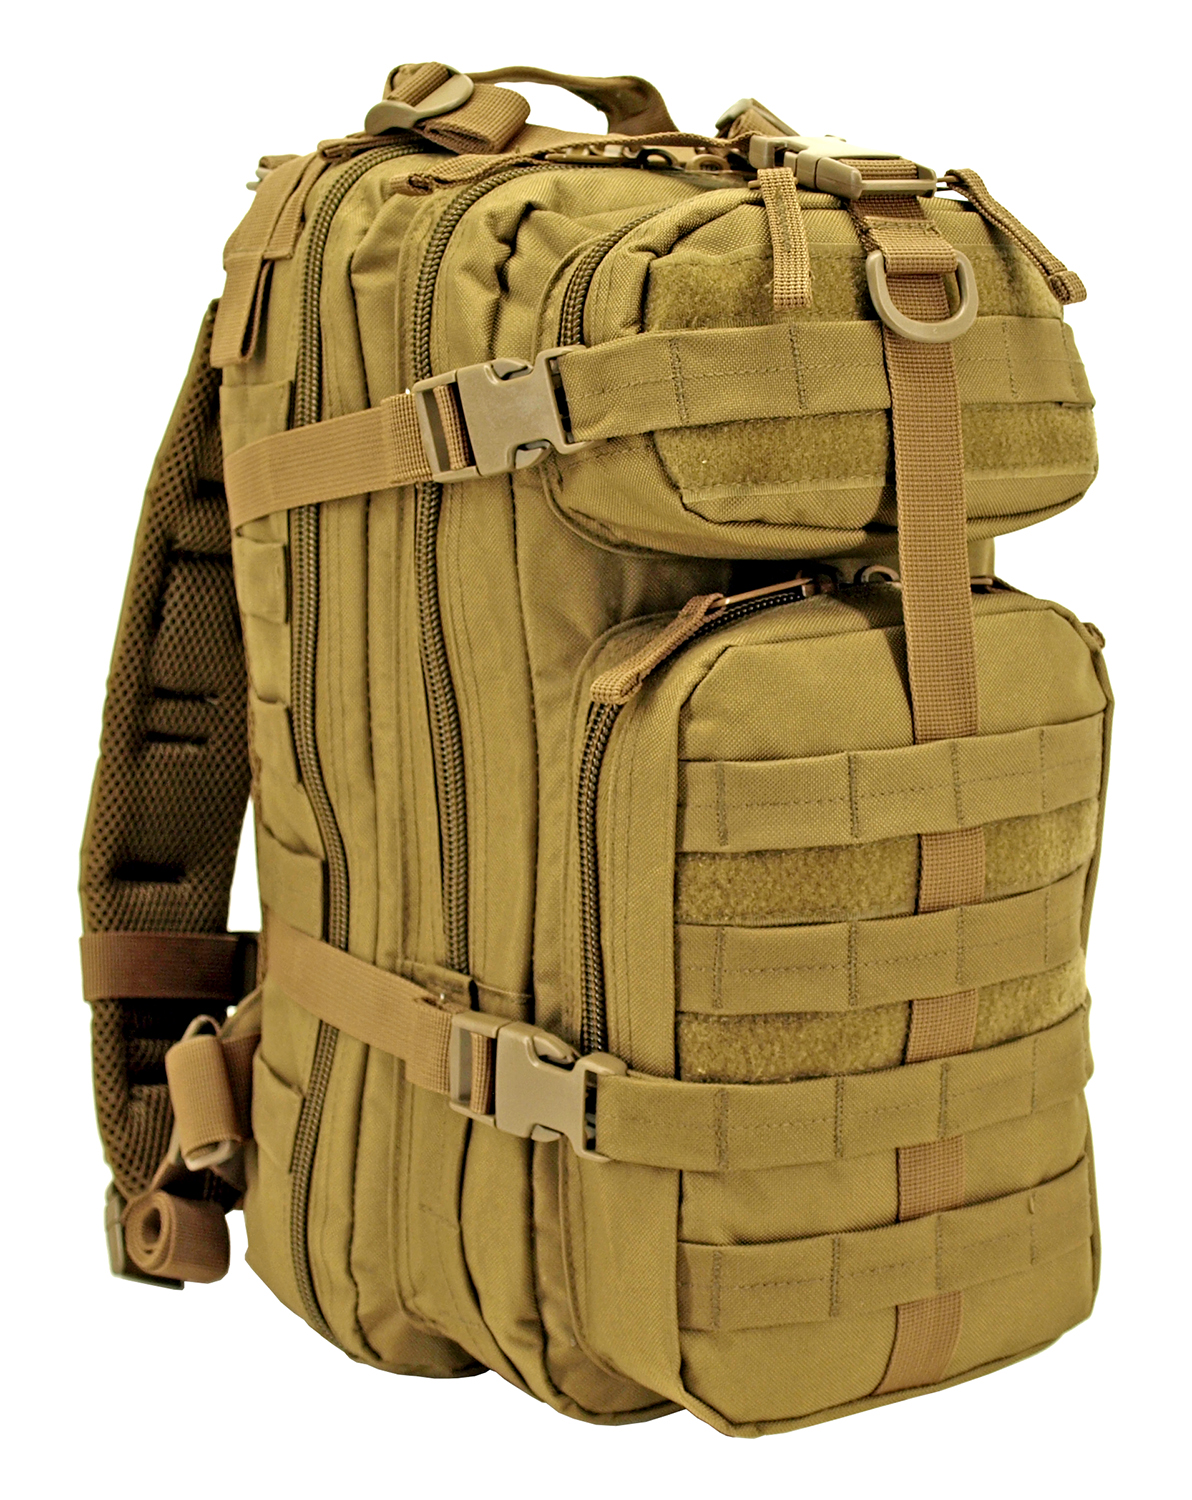 Tactical Assault Backpack - Desert Tan